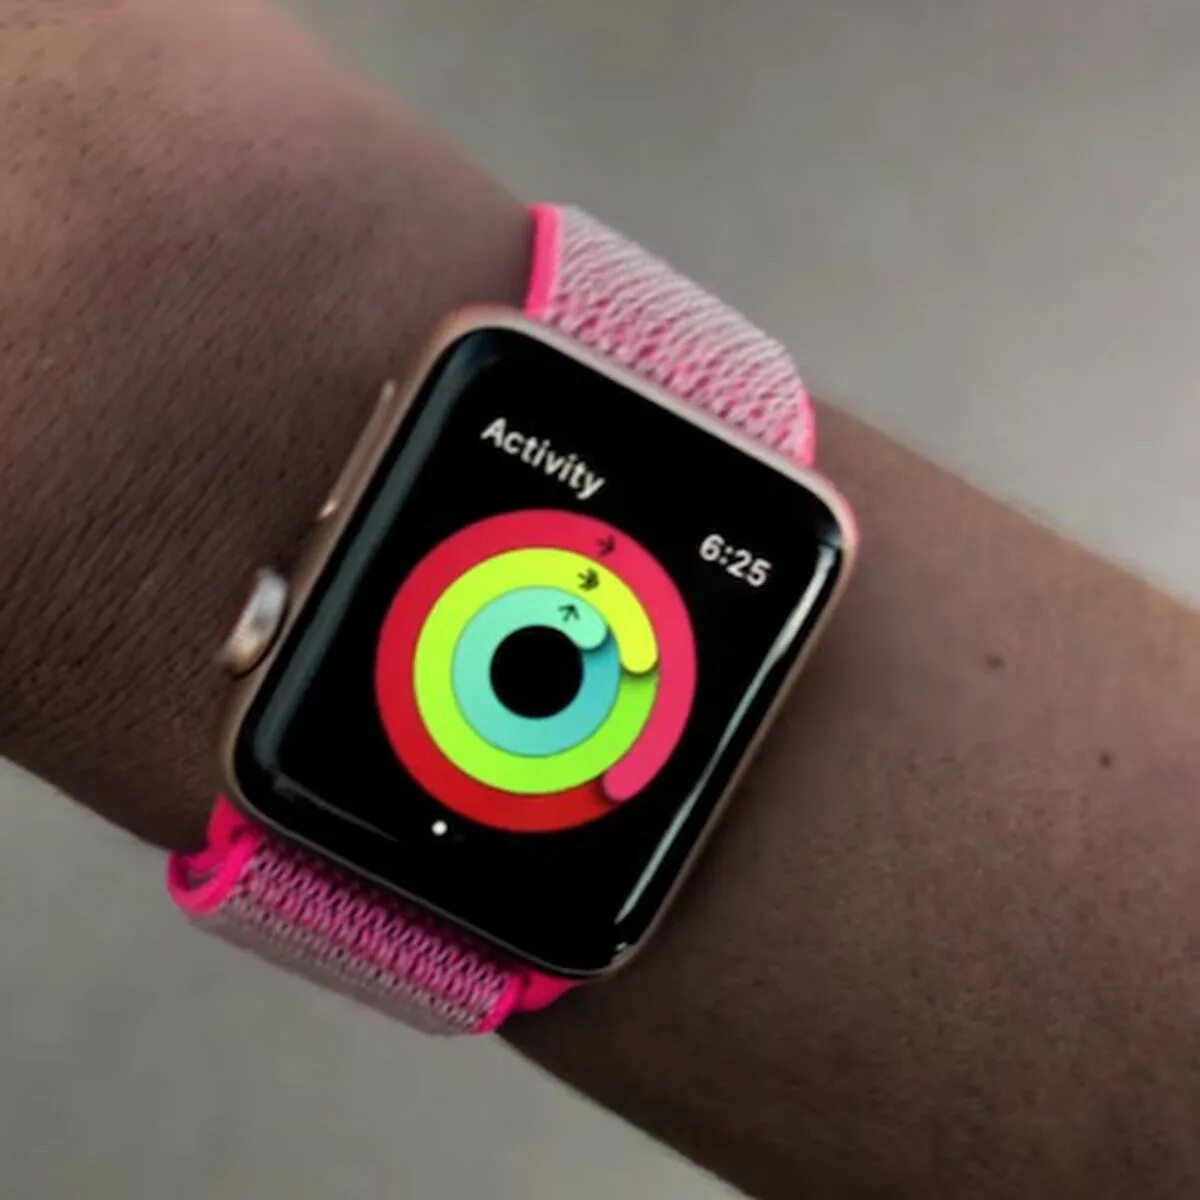 Кольца apple watch. Кольца Эппл вотч. Миланское кольцо Эппл вотч. Кольцо закрытия в Apple watch. Фитнес кольцо Apple.